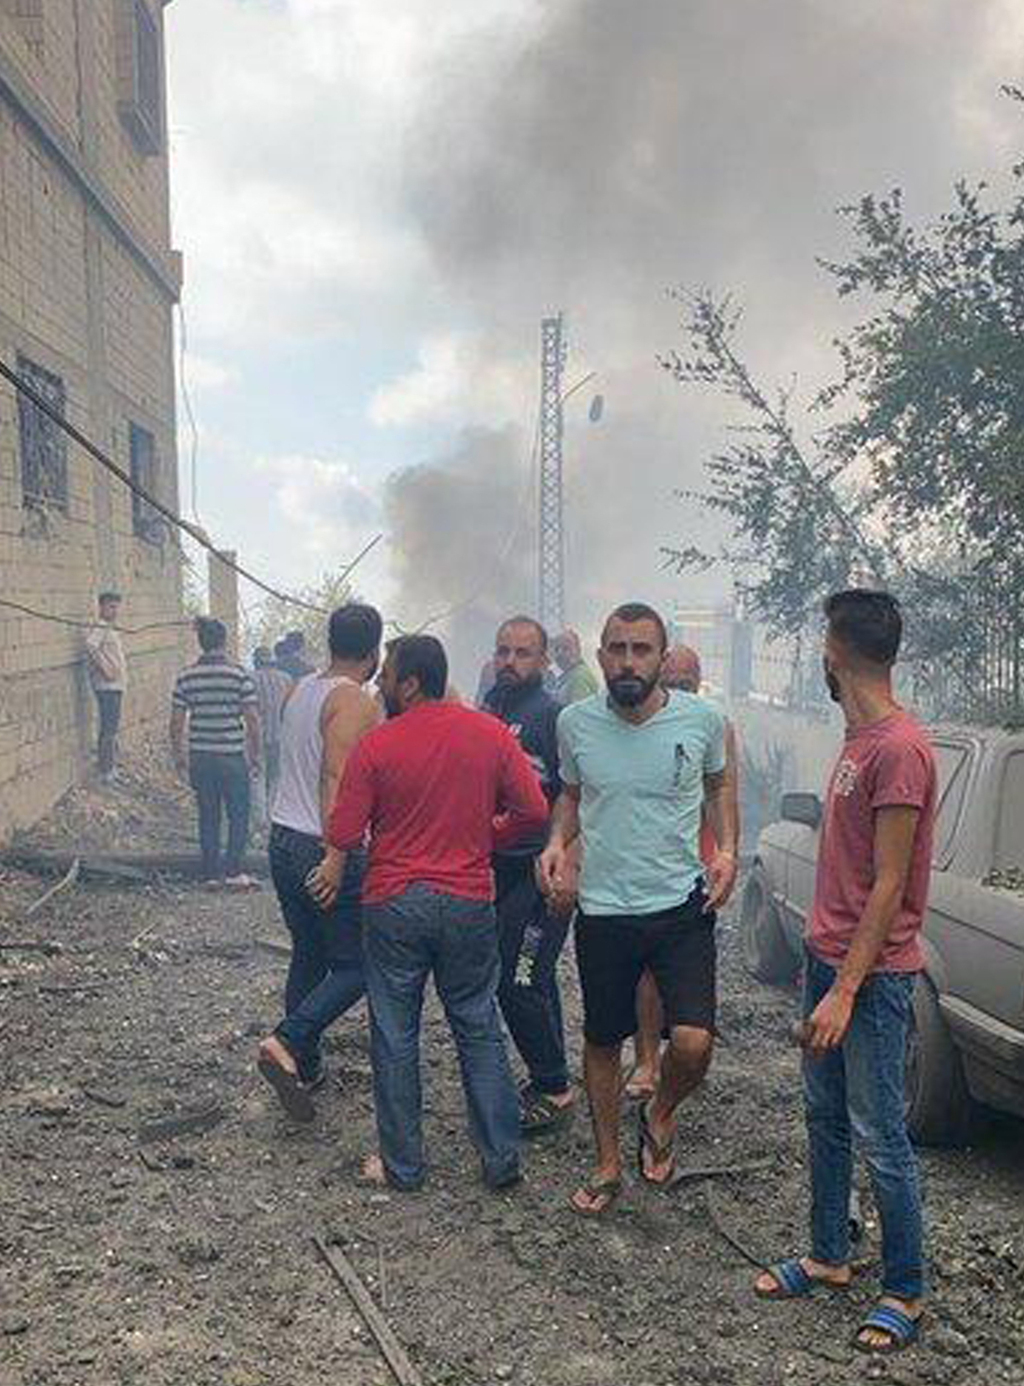 פיצוץ גדול נשמע בעין קאנא שבדרום לבנון 